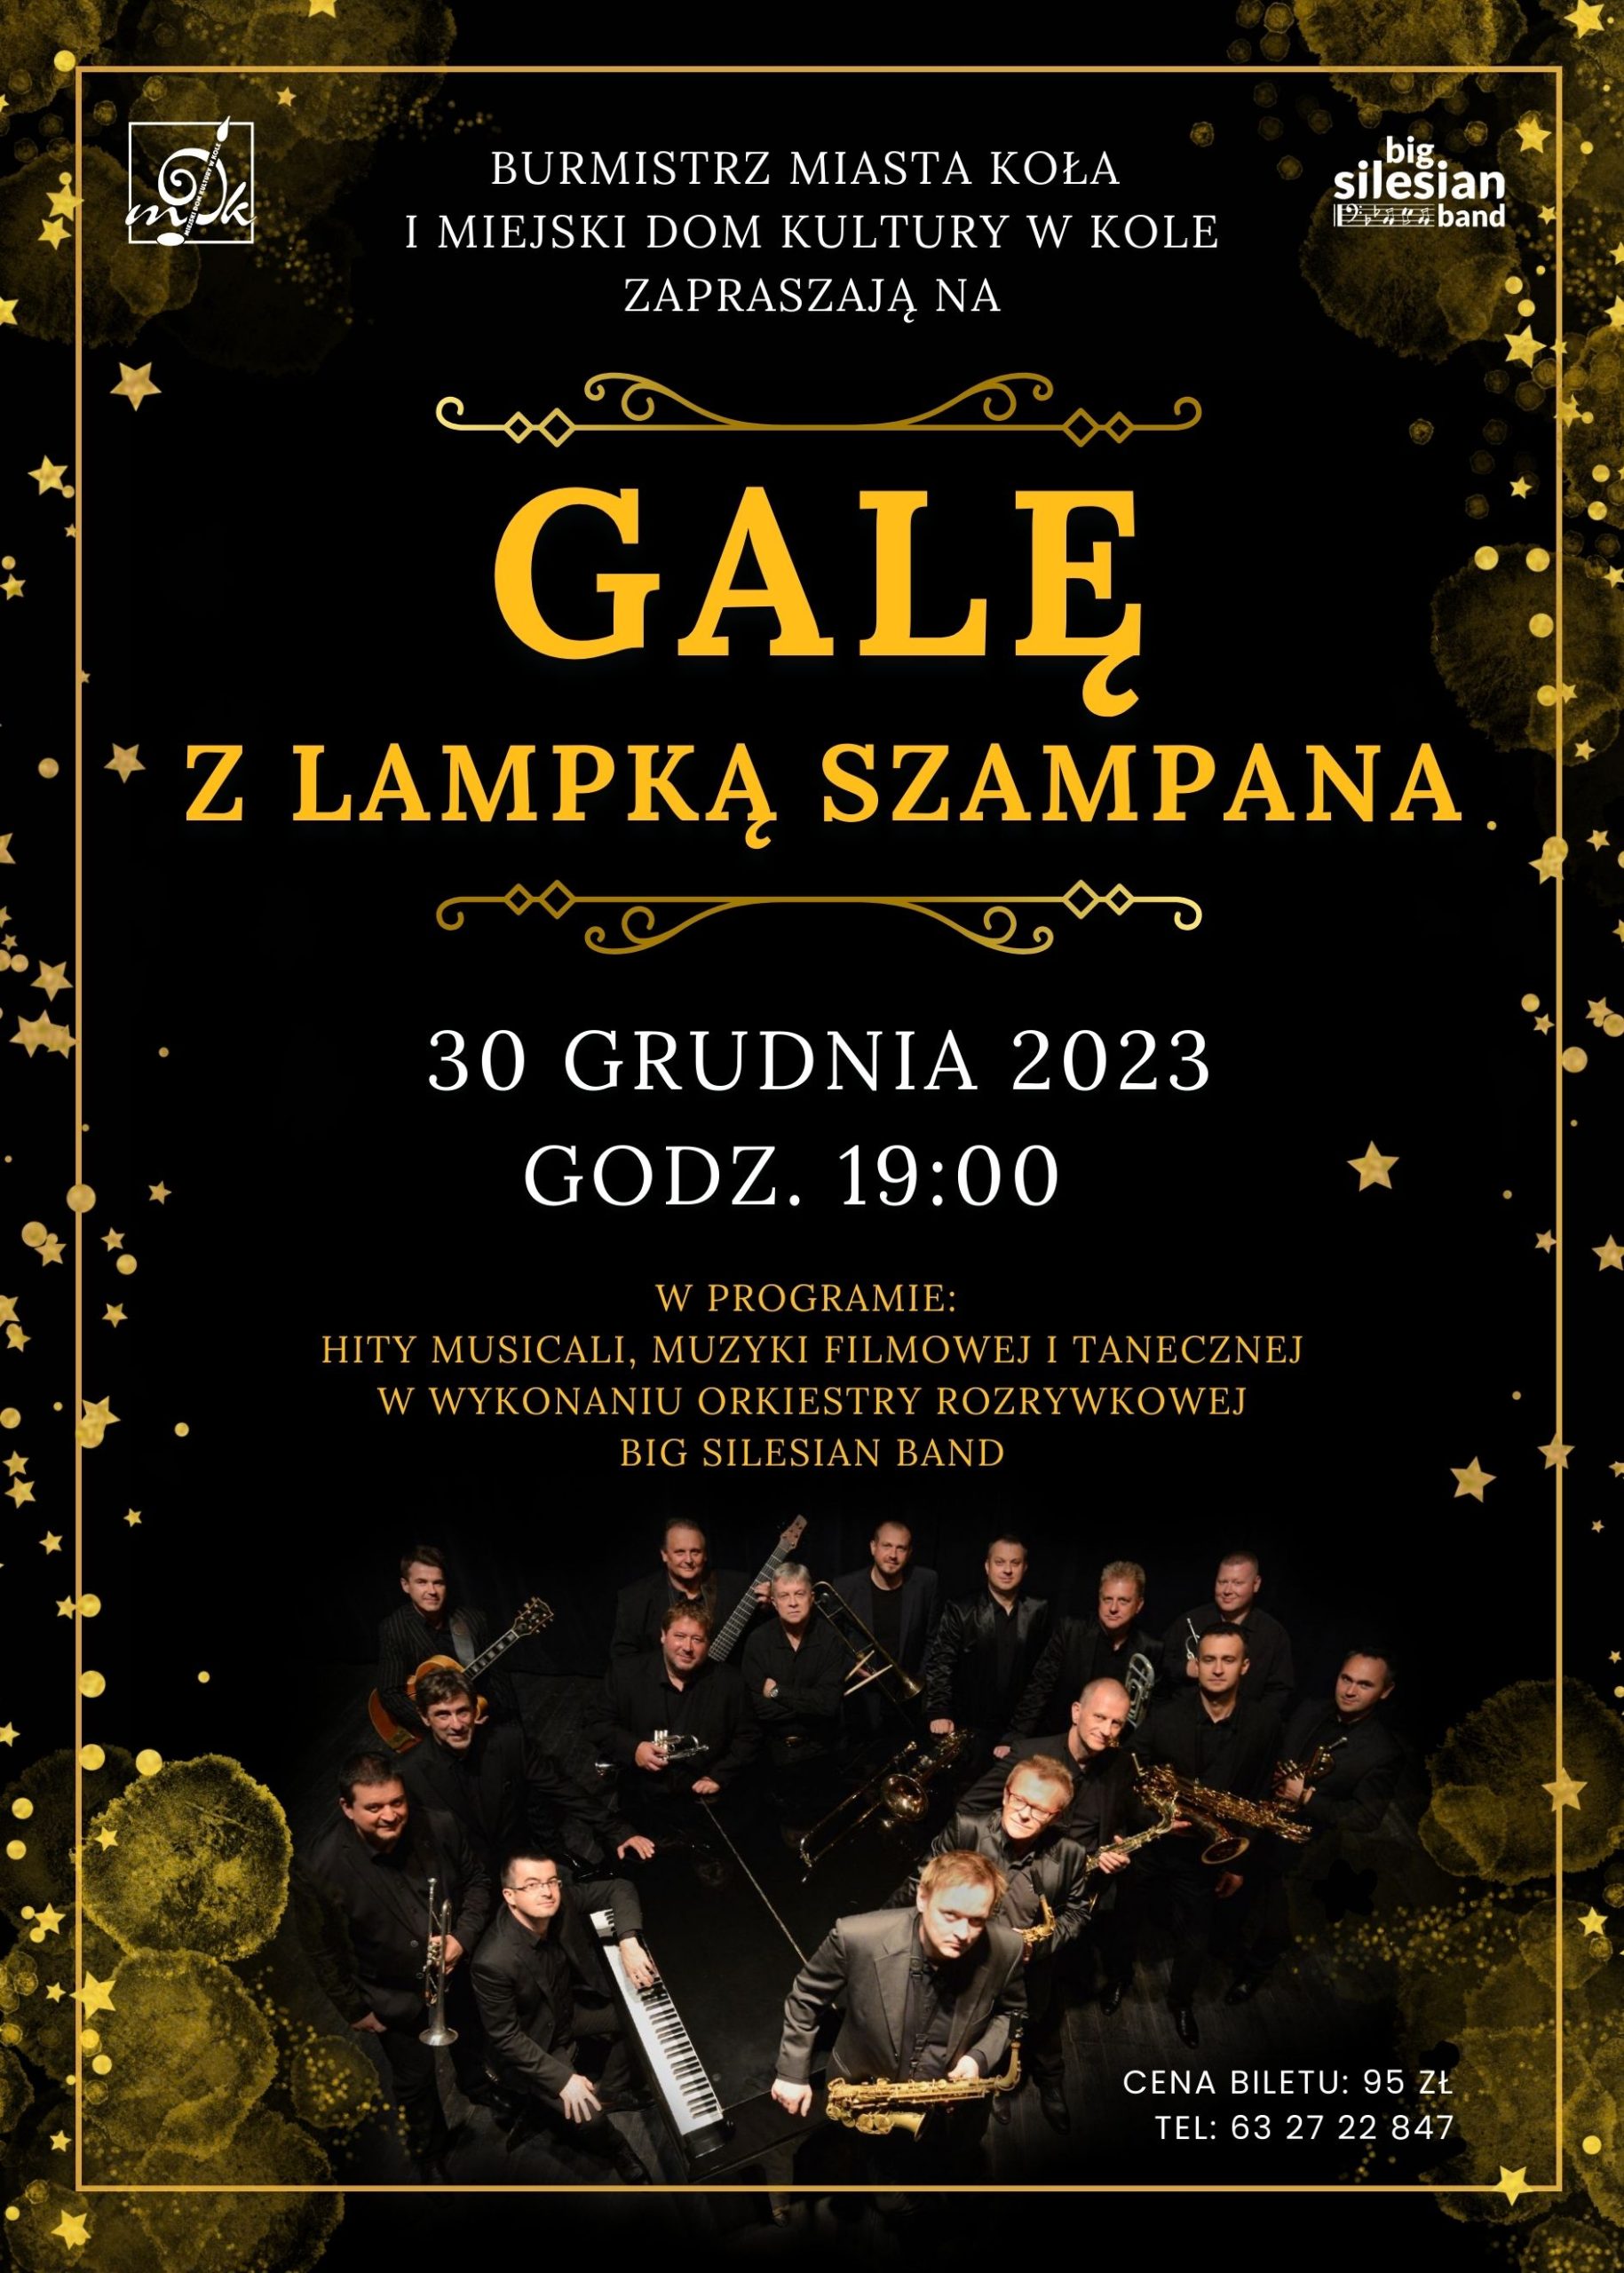 Plakat Gala z lampką szampana w Miejskim Domu Kultury w Kole, tekst pod plakatem